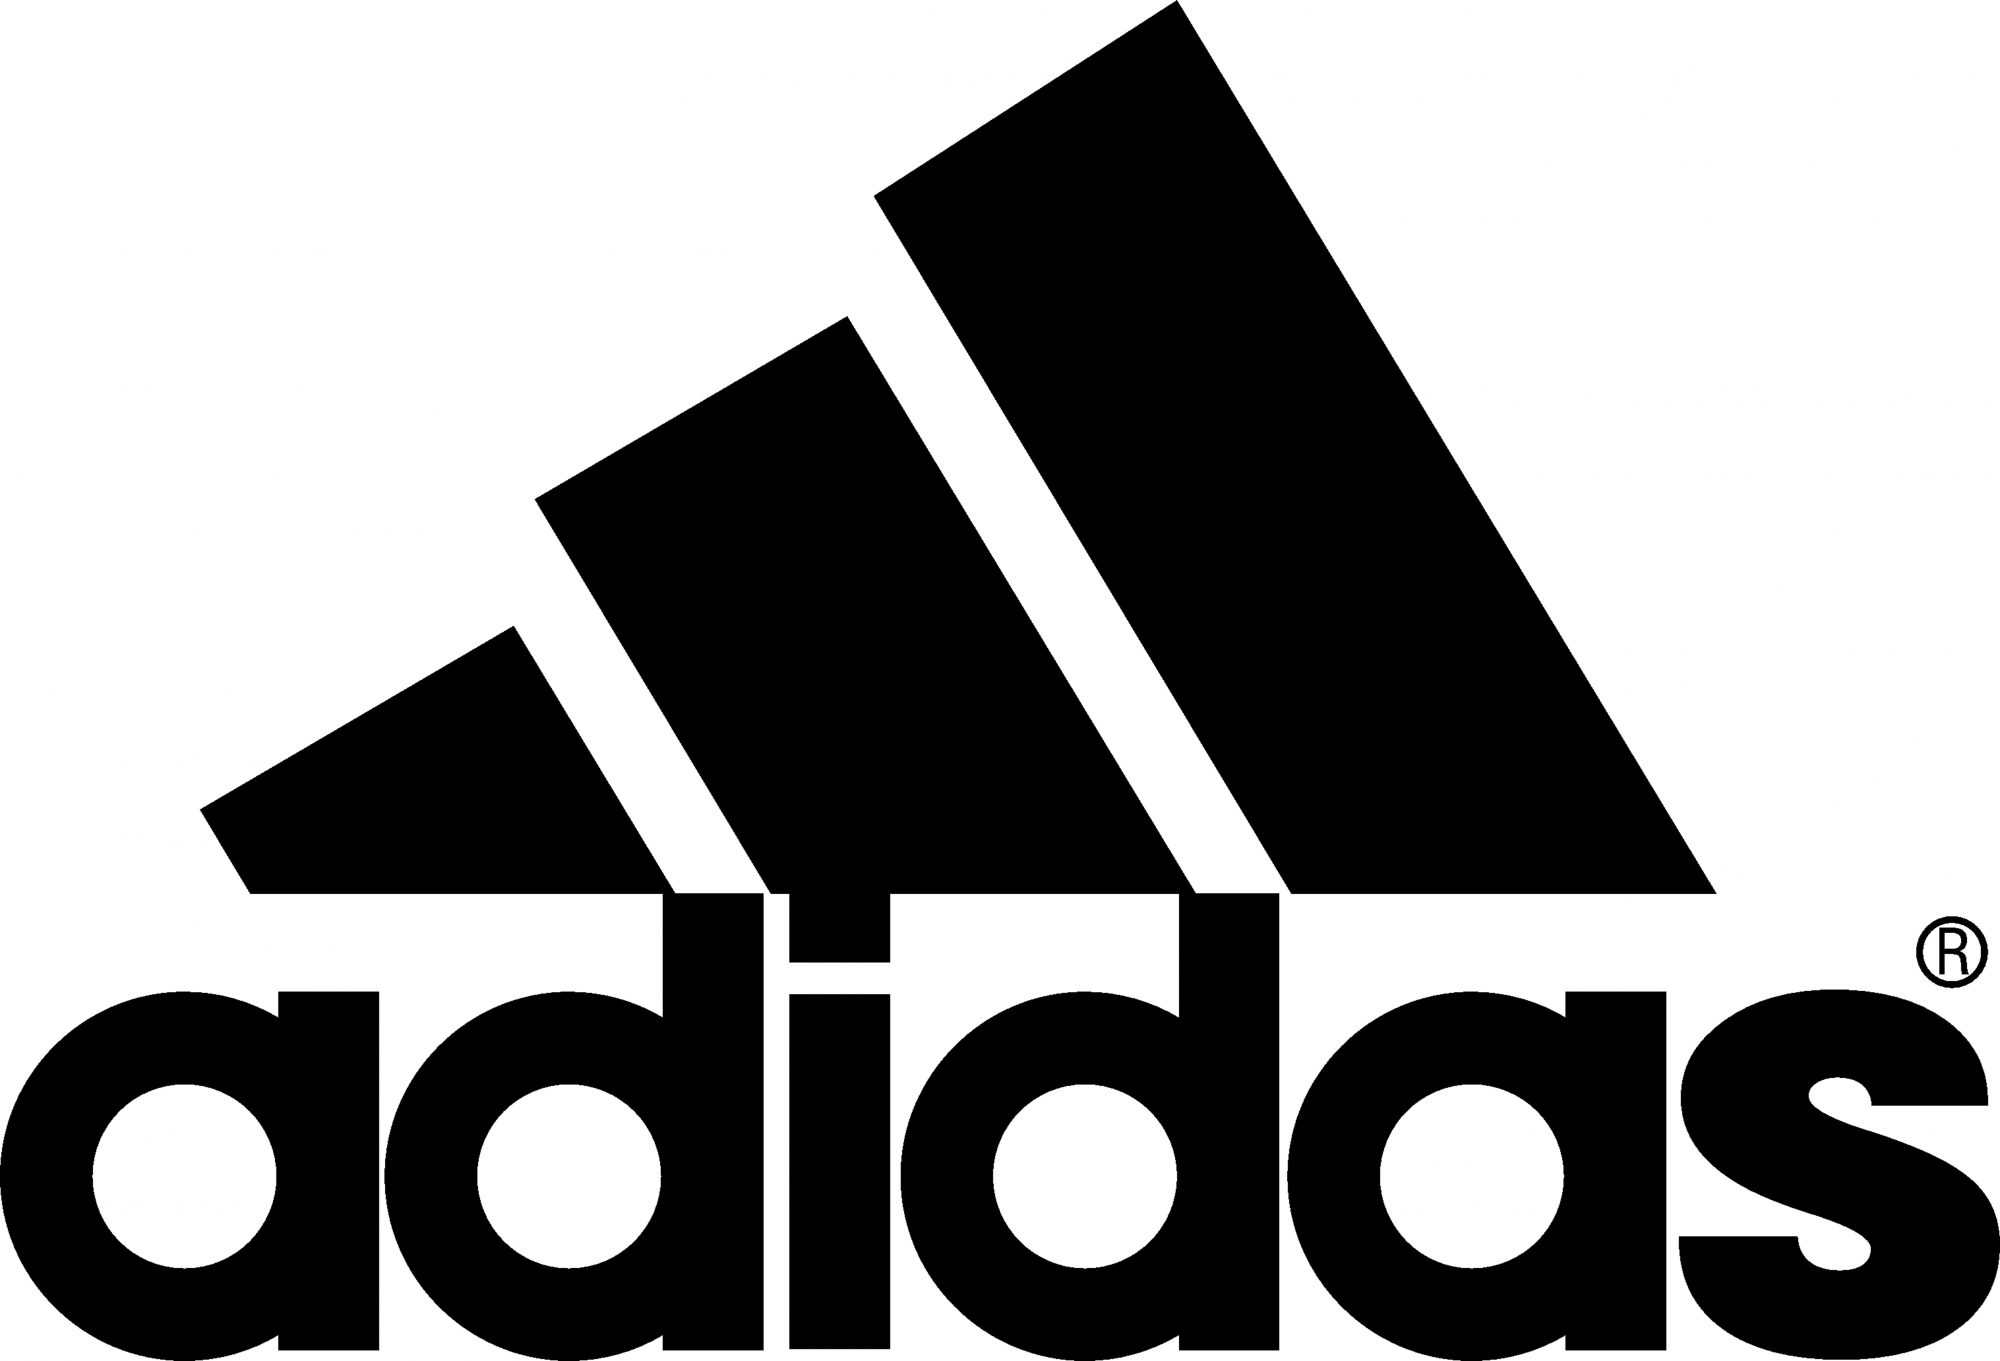 adidas logo image